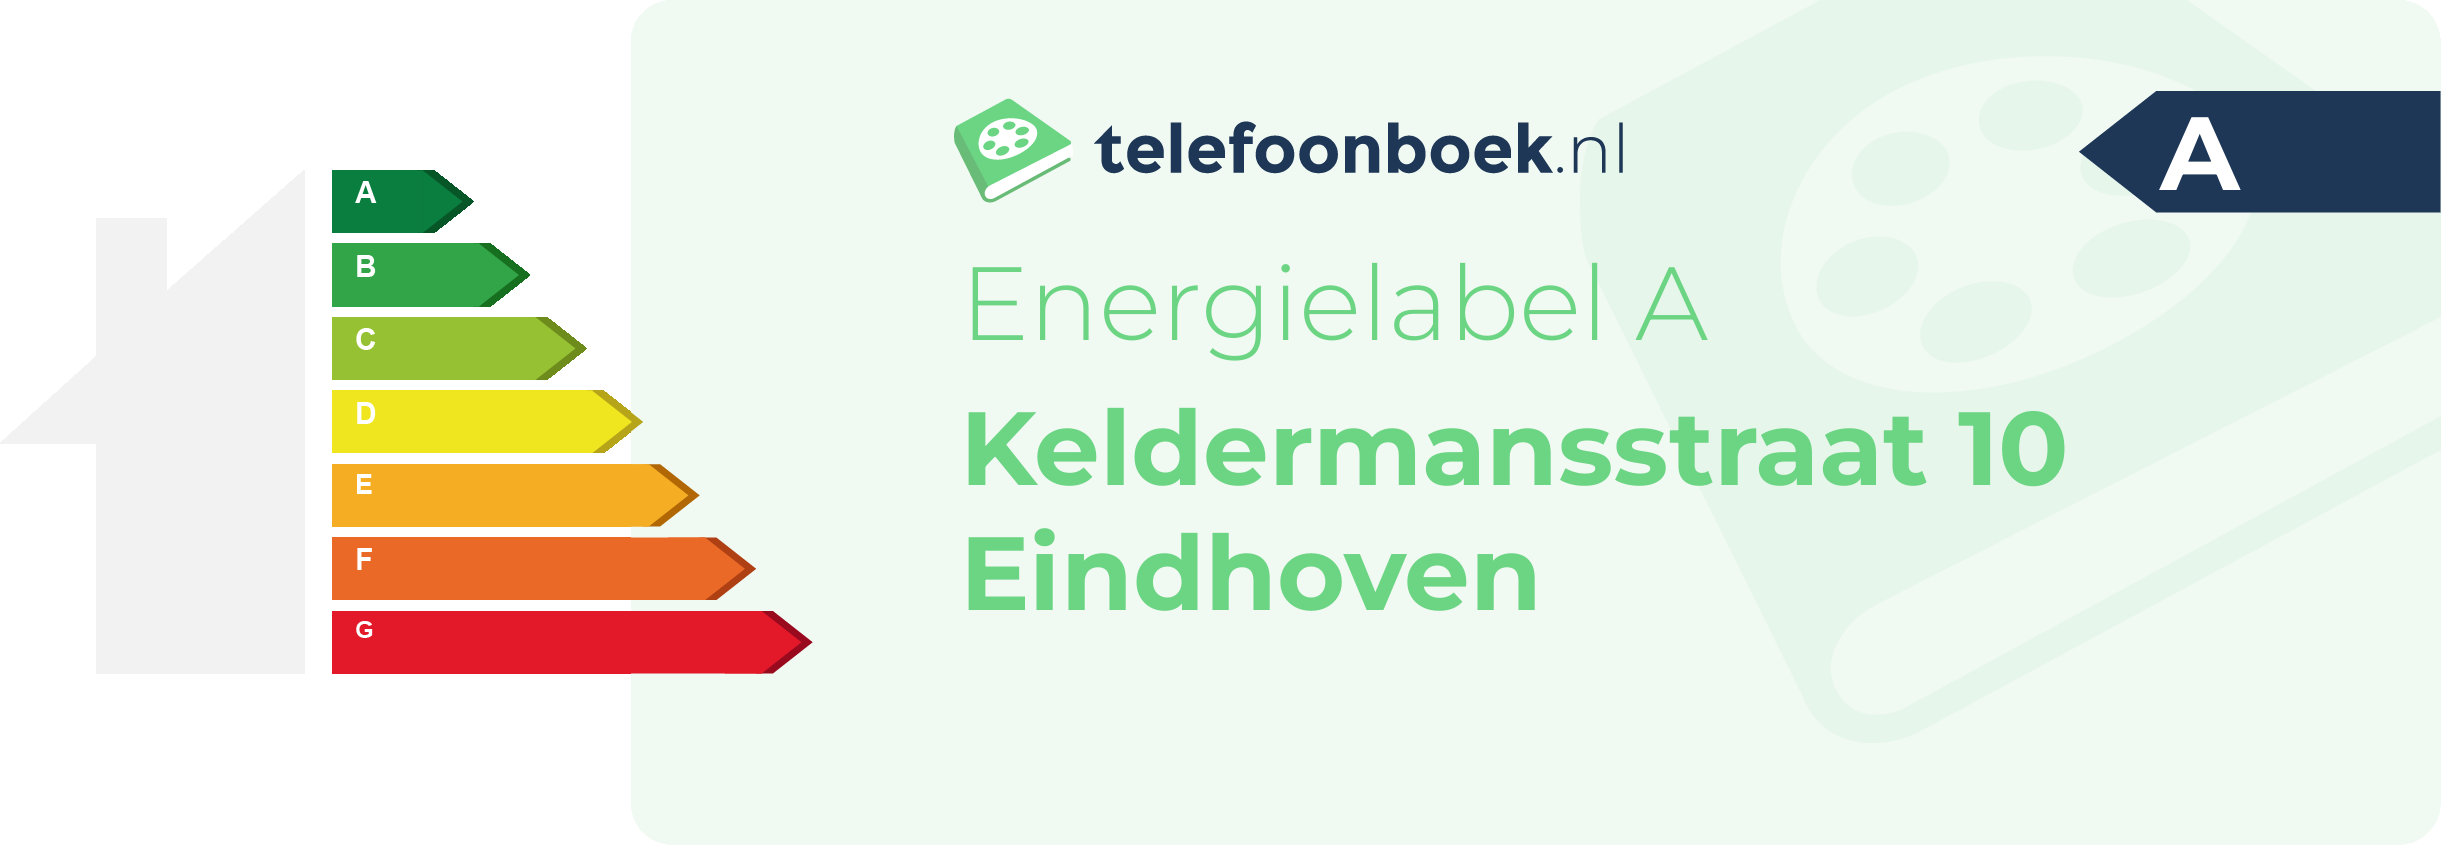 Energielabel Keldermansstraat 10 Eindhoven